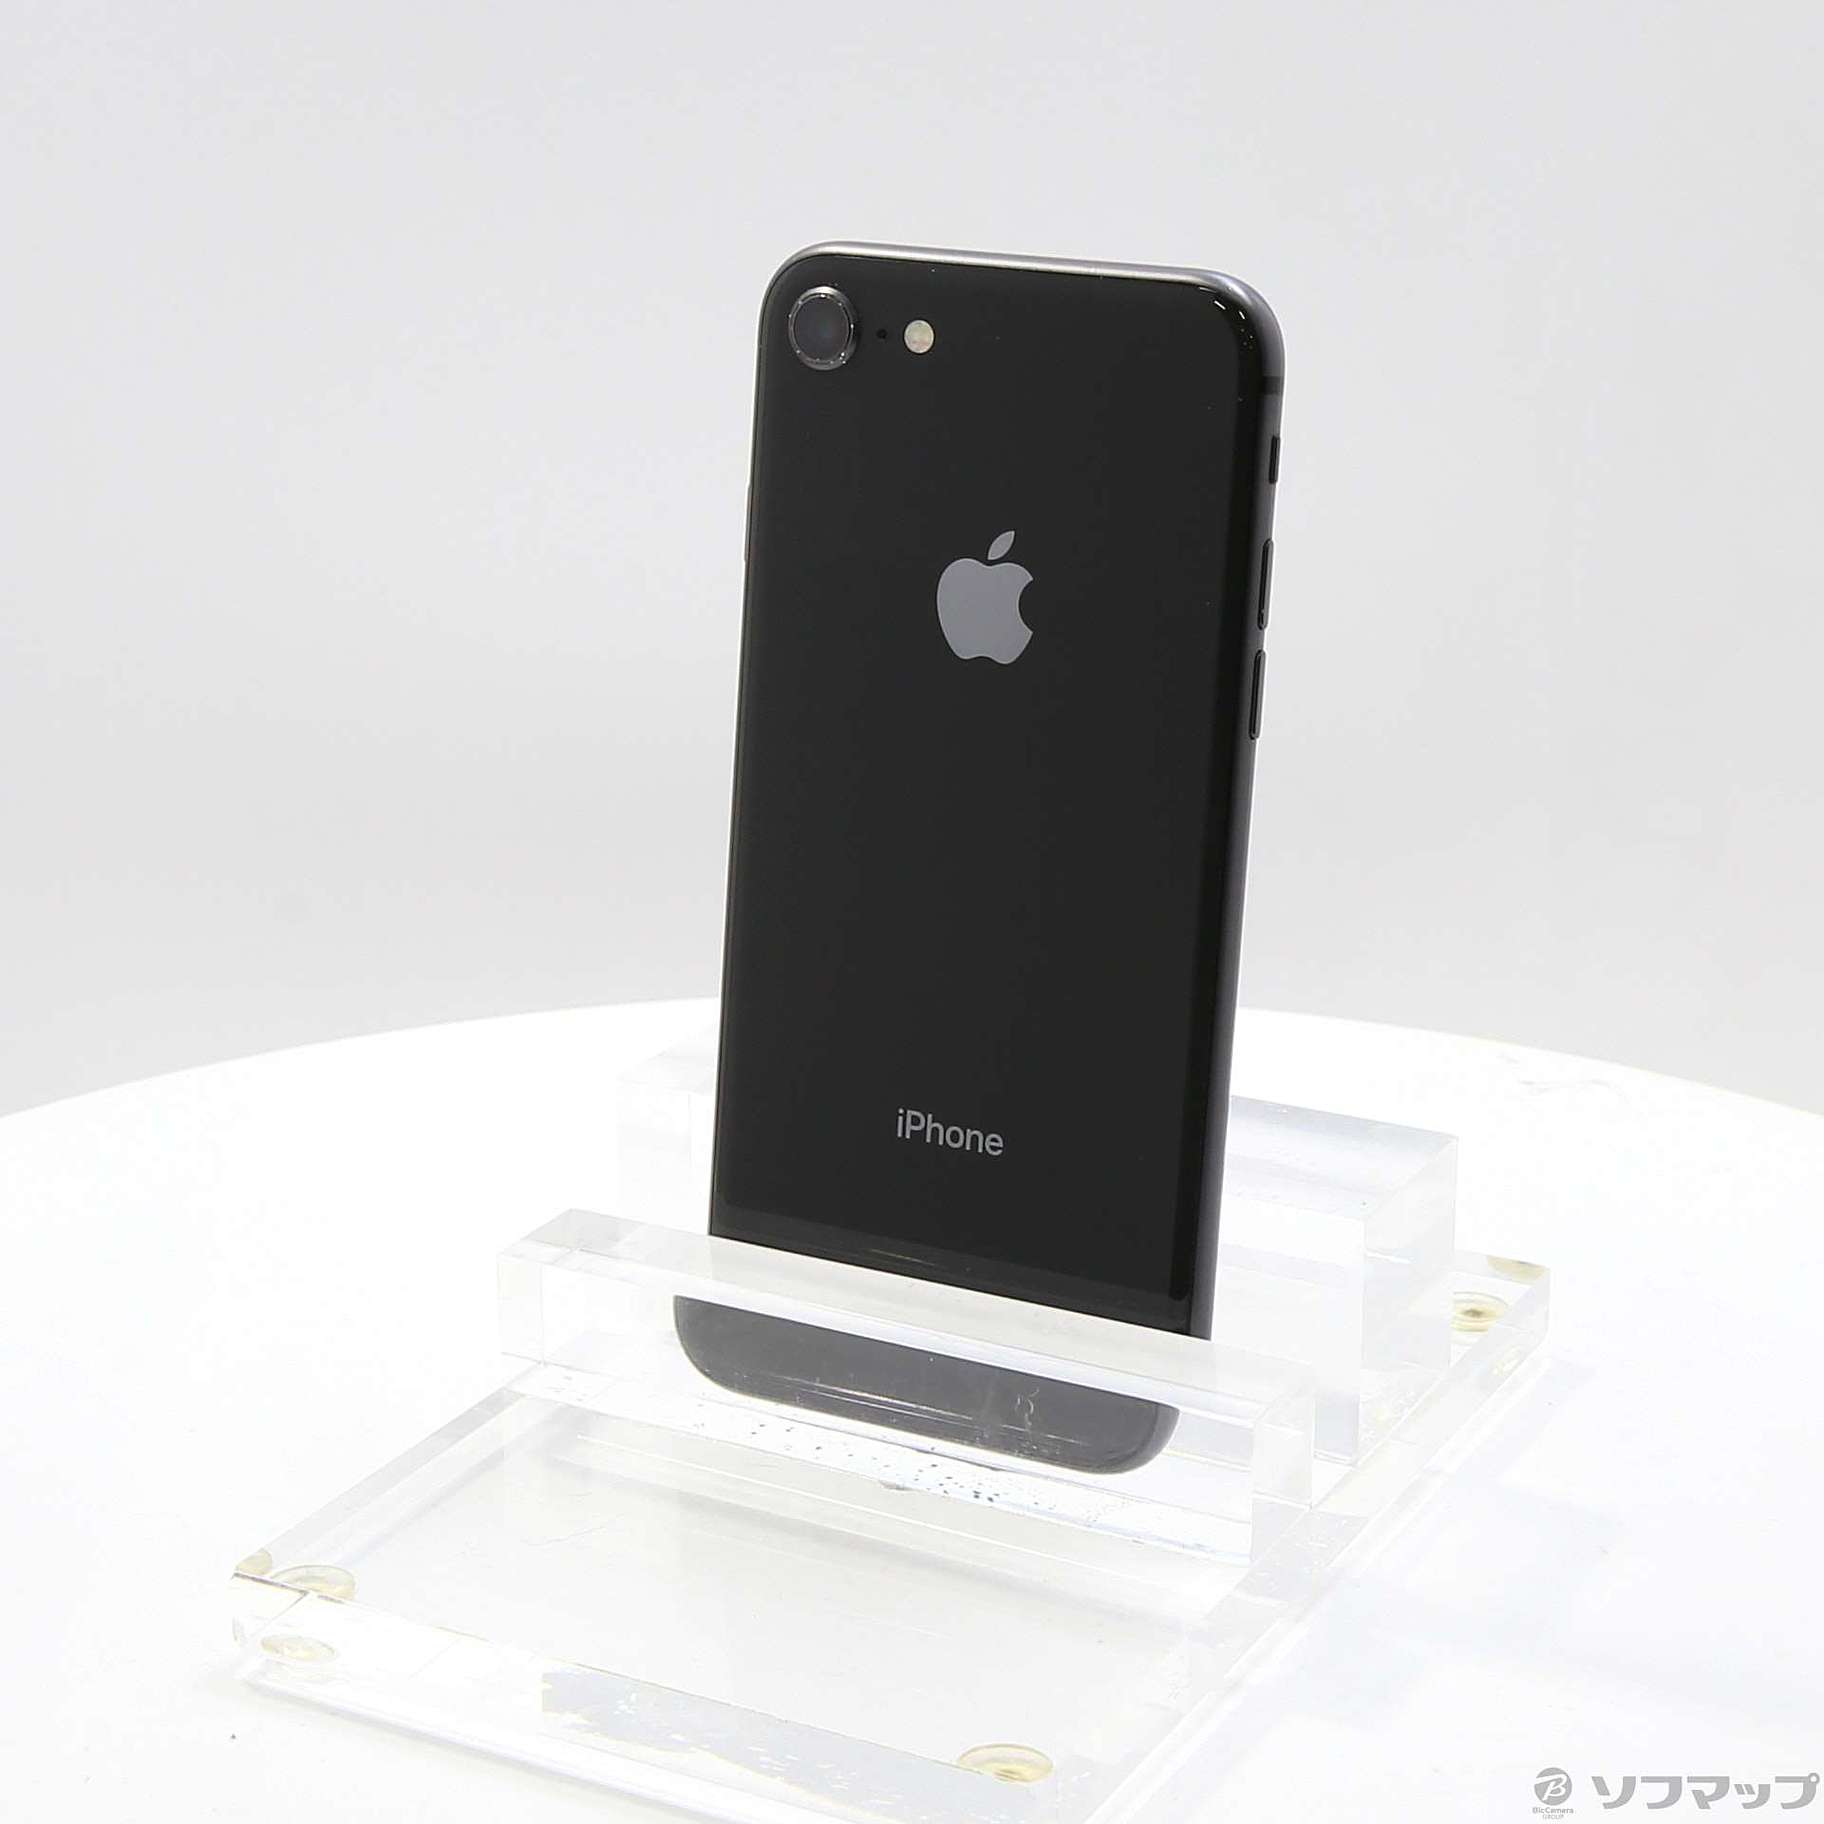 iPhone8 spacegray 64GB SIMフリー スペースグレイスマートフォン/携帯 